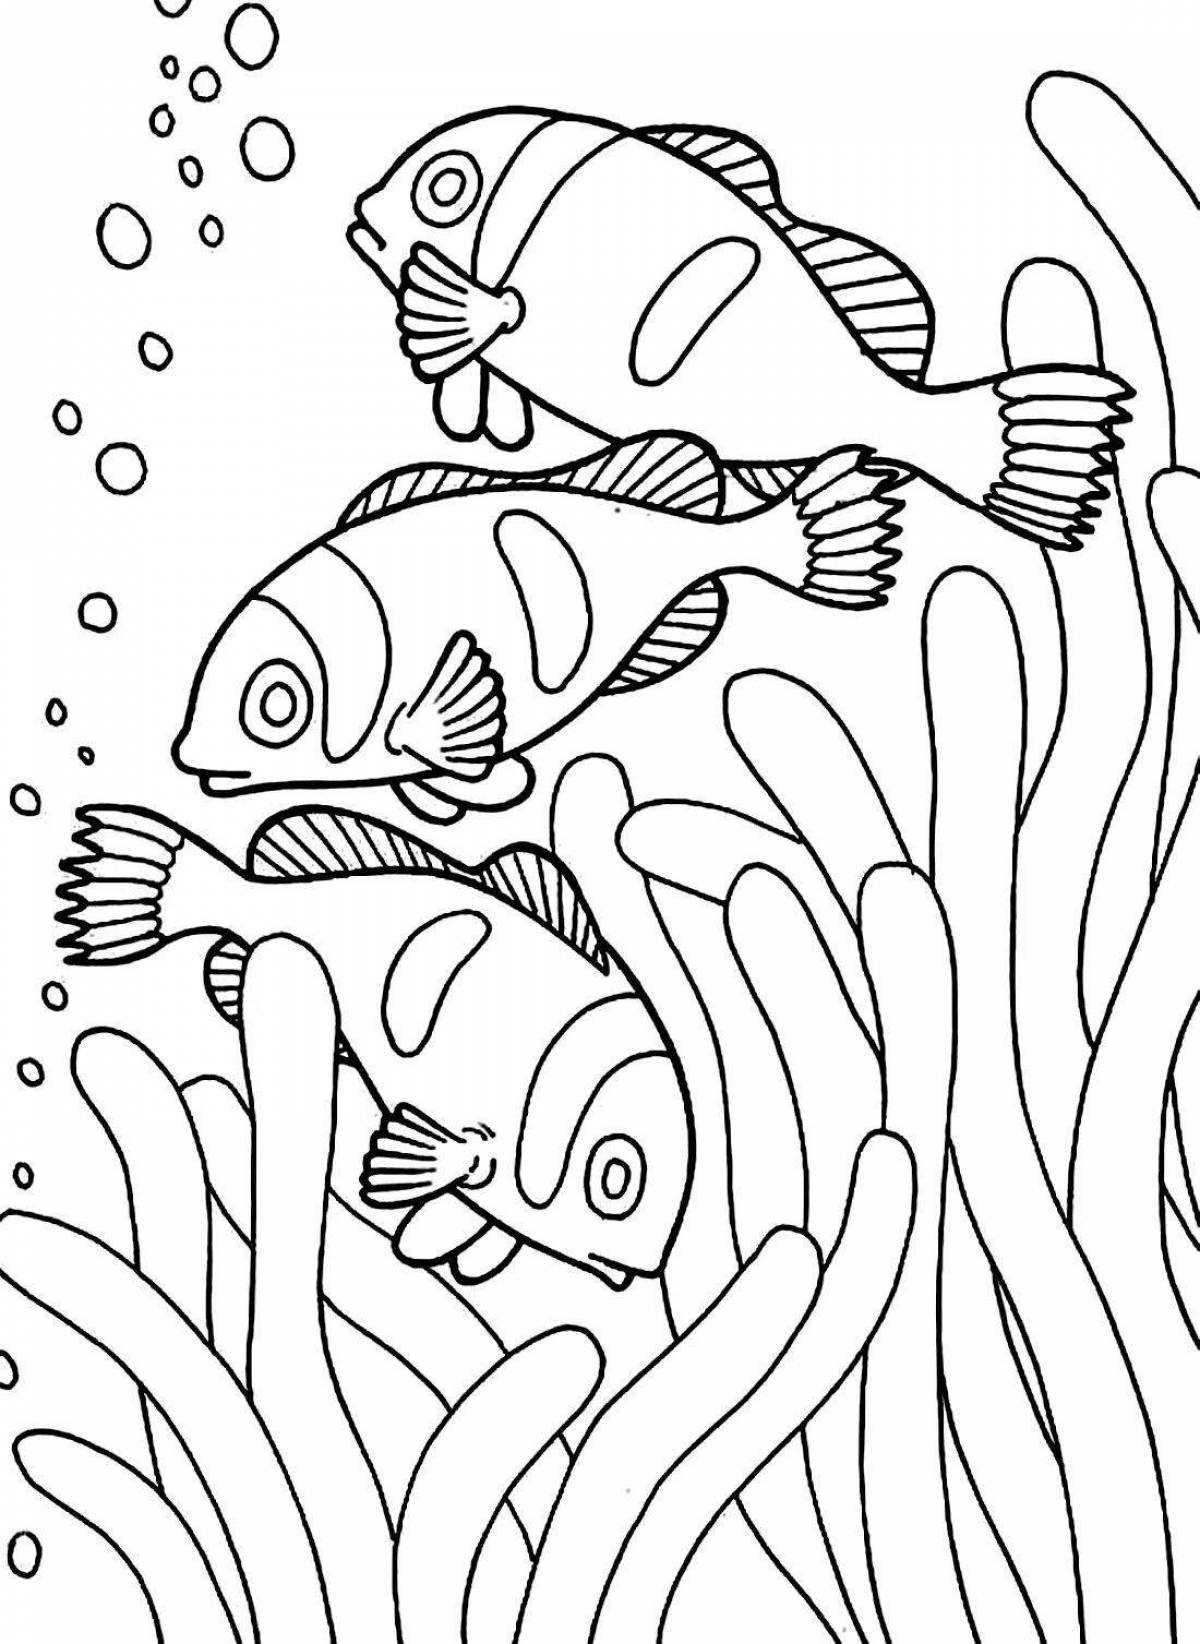 Блестящая страница раскраски подводного мира